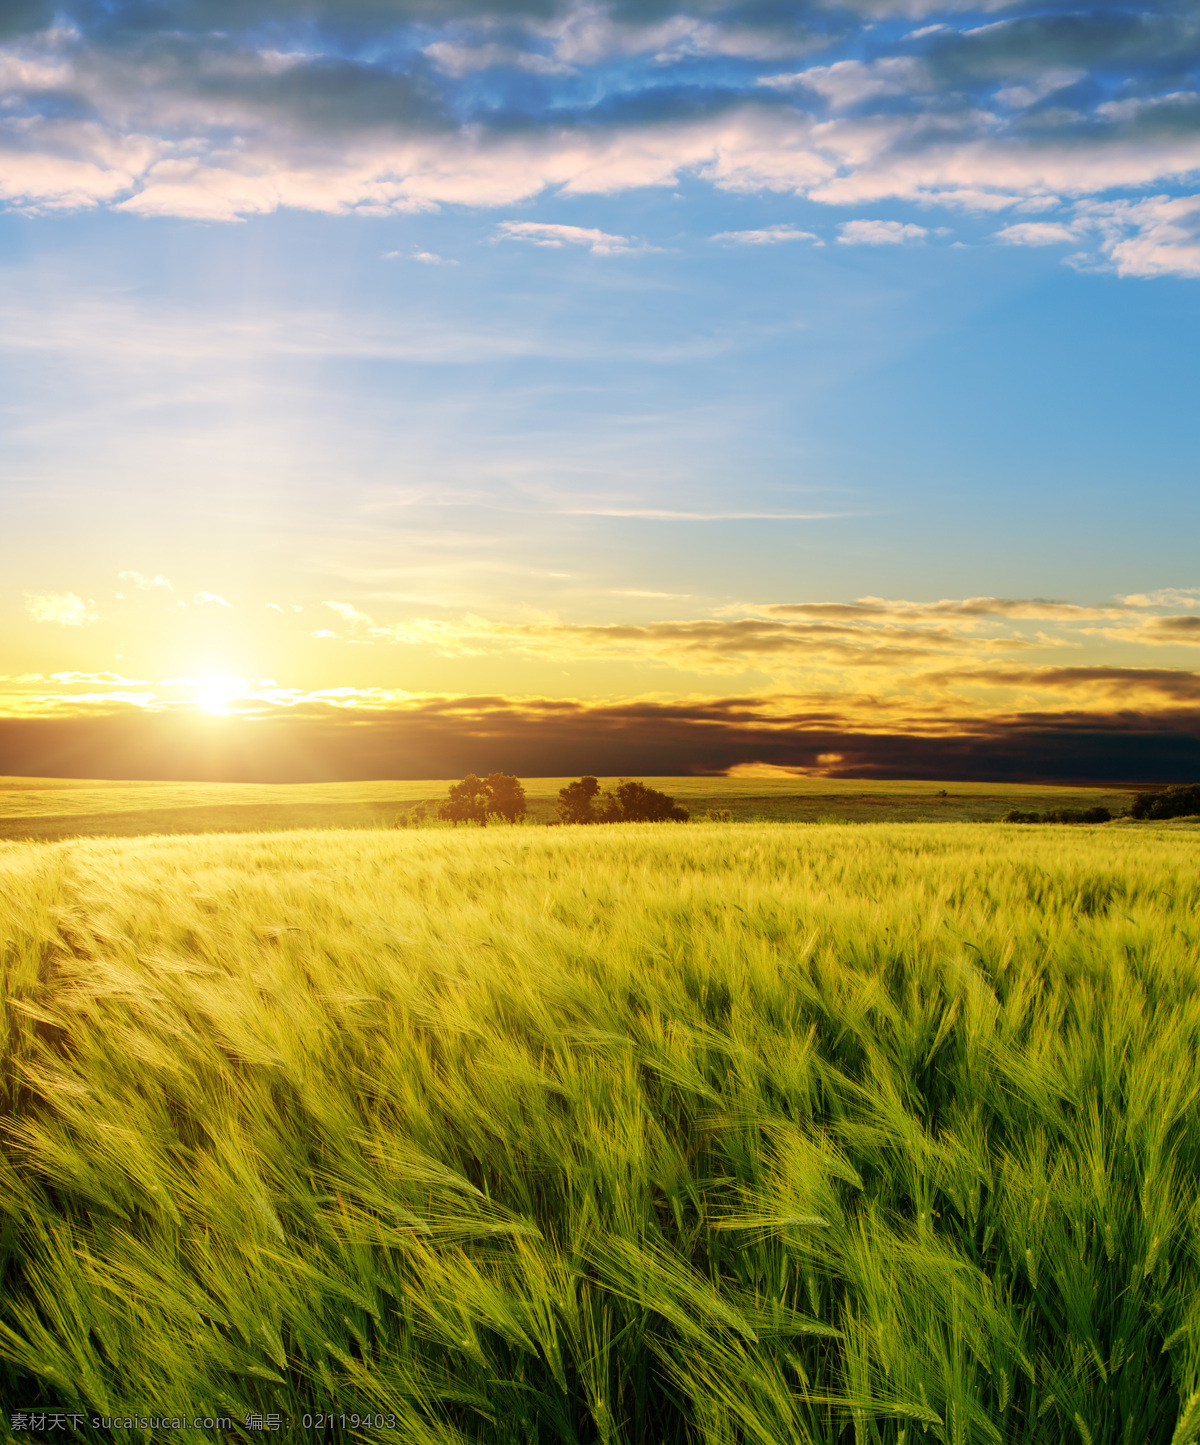 绿色 麦浪 麦穗 小麦 自然风景 美景 青色土地 农田 风光 麦田特写 粮食 植物 背景 自由 生长 环境 绿色麦田 自然景观 田园风光